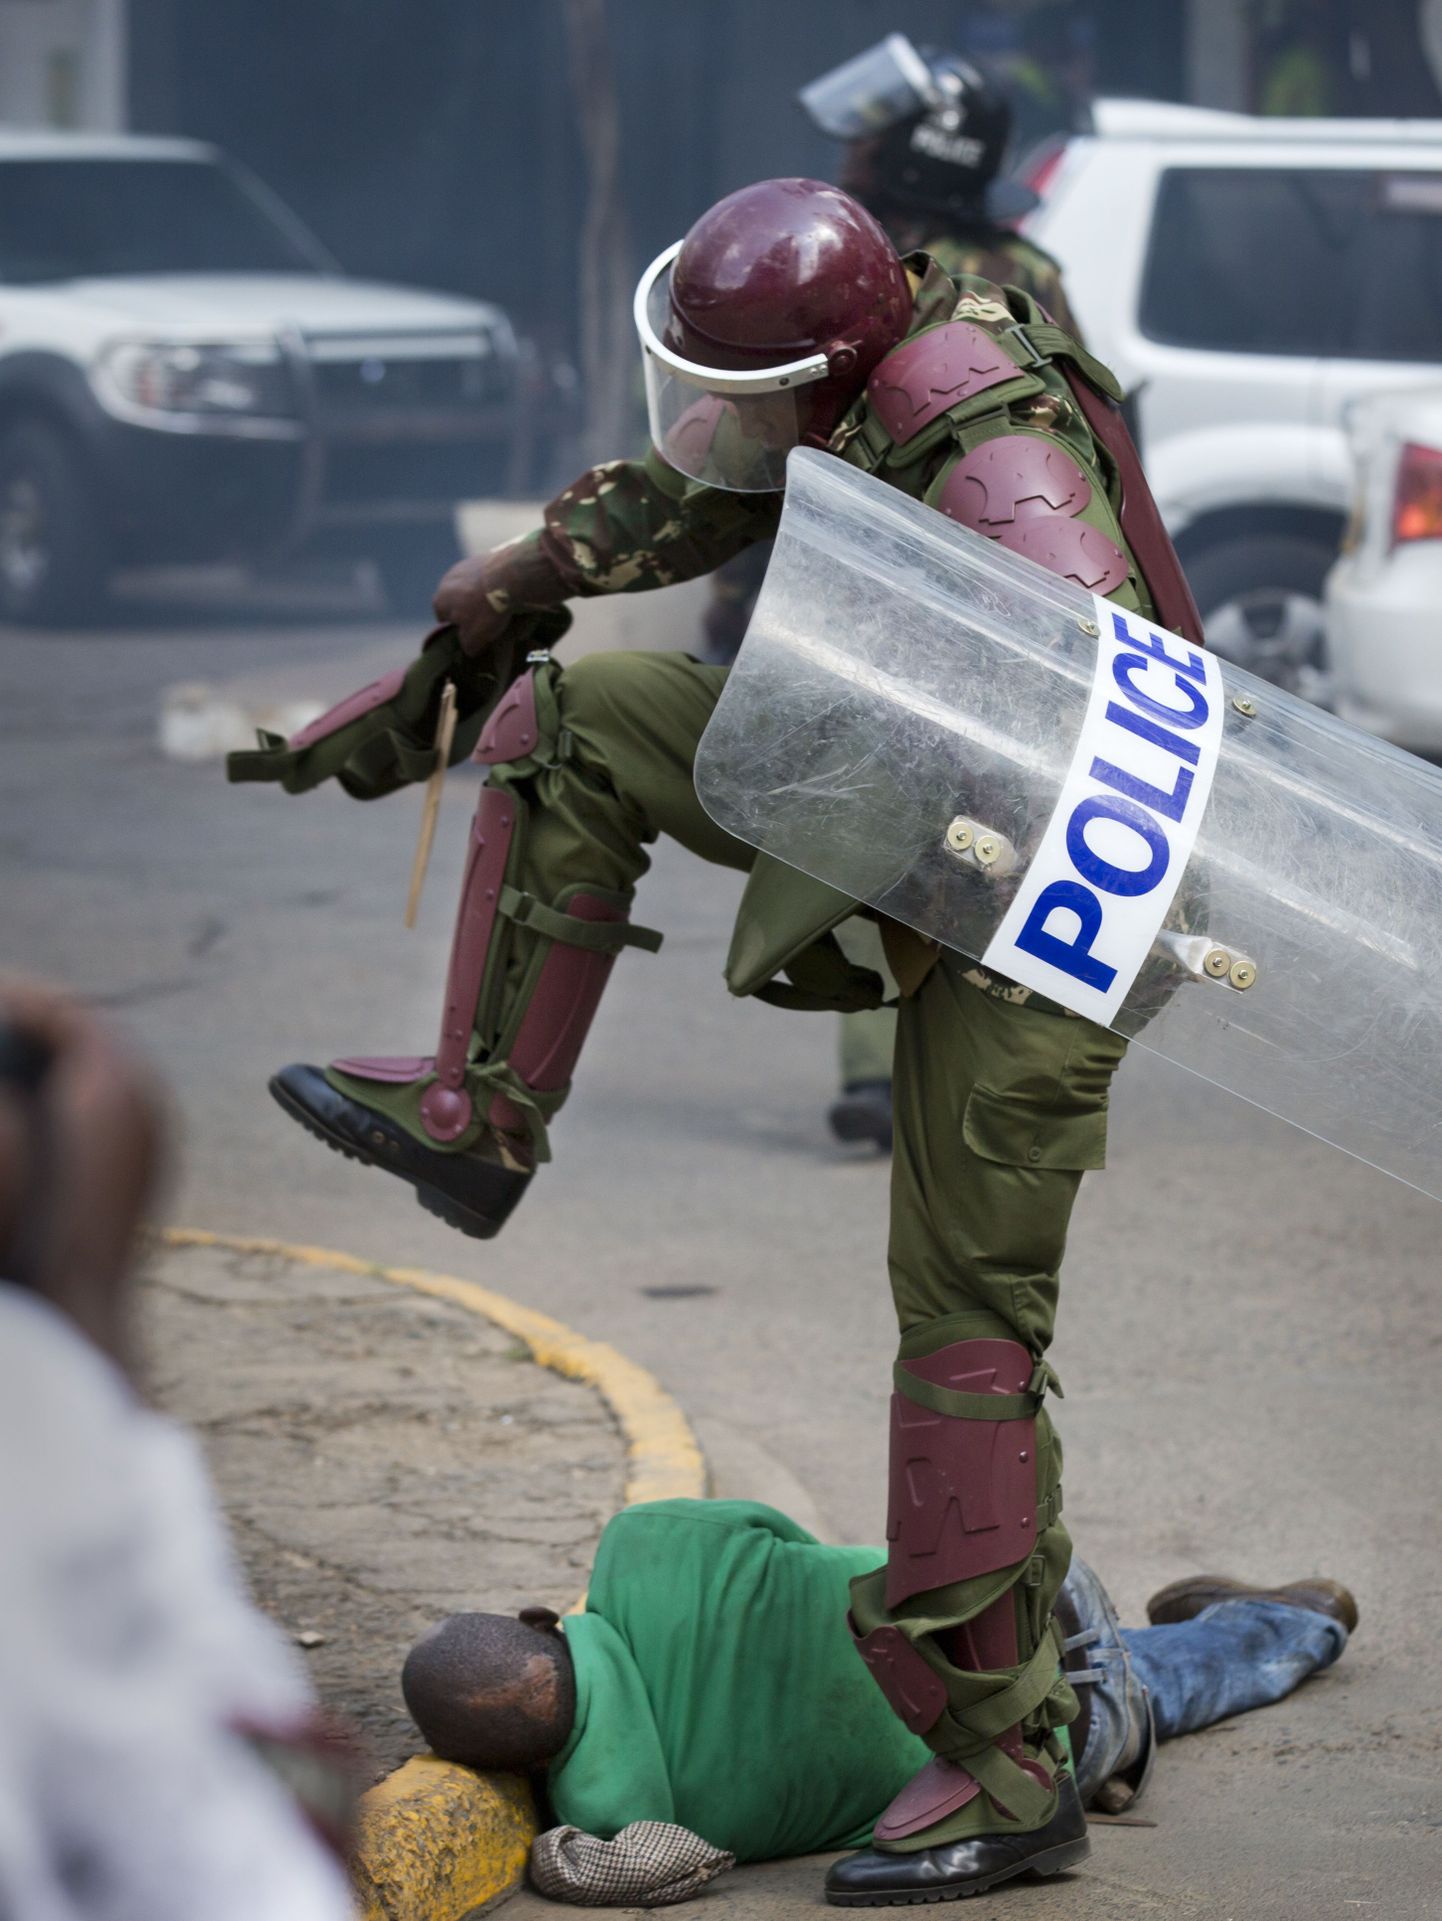 Keenia märulipolitseinik maas lamavat meest löömas. Pilt on illustratiivne